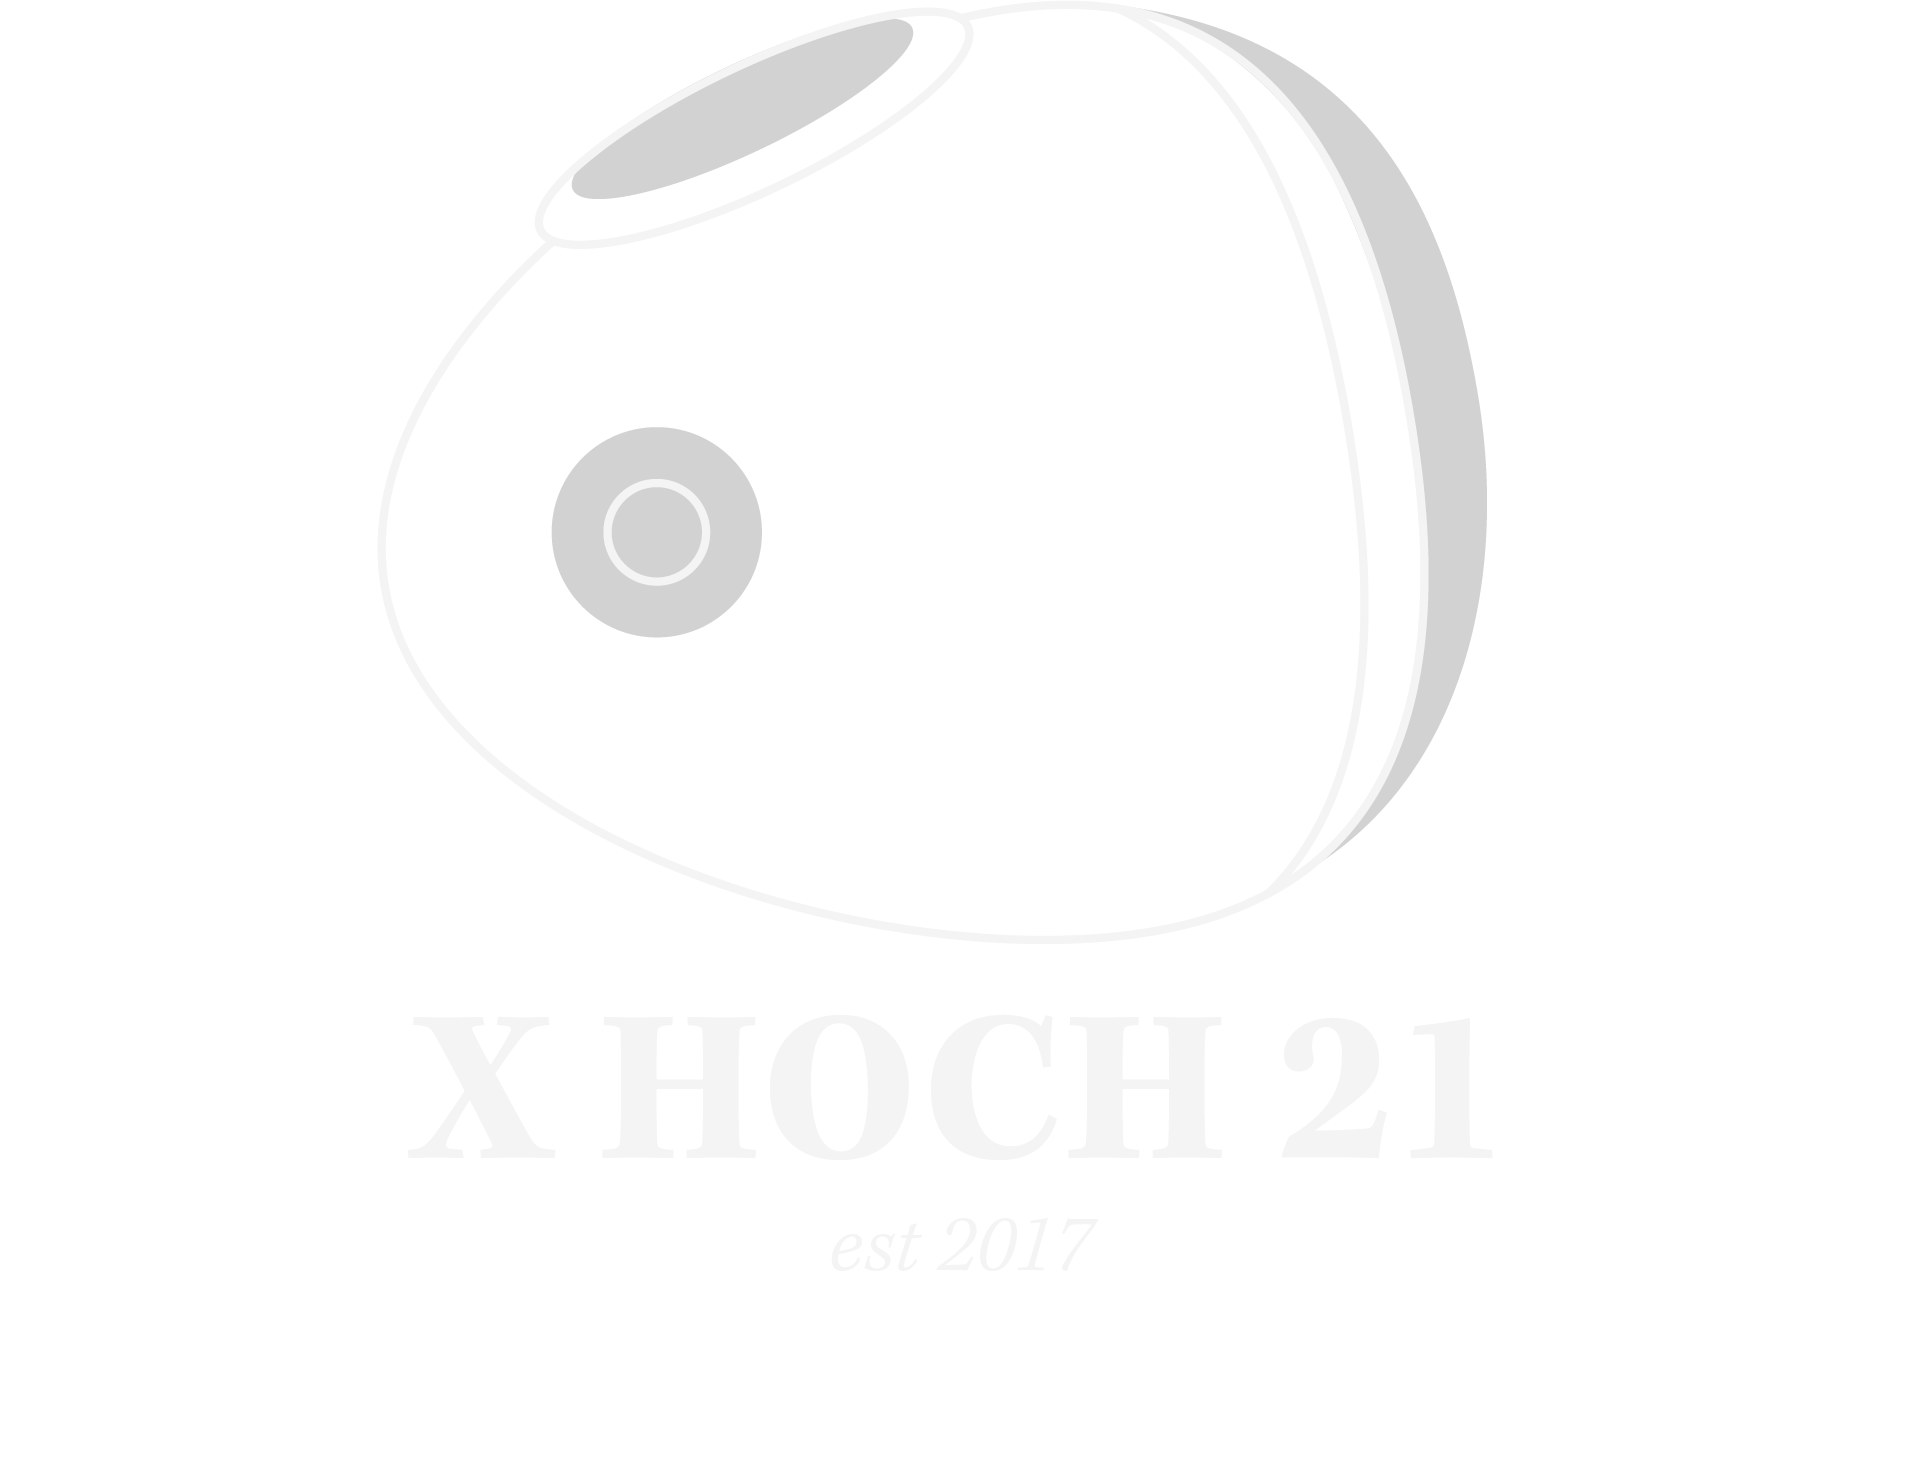 xhoch21